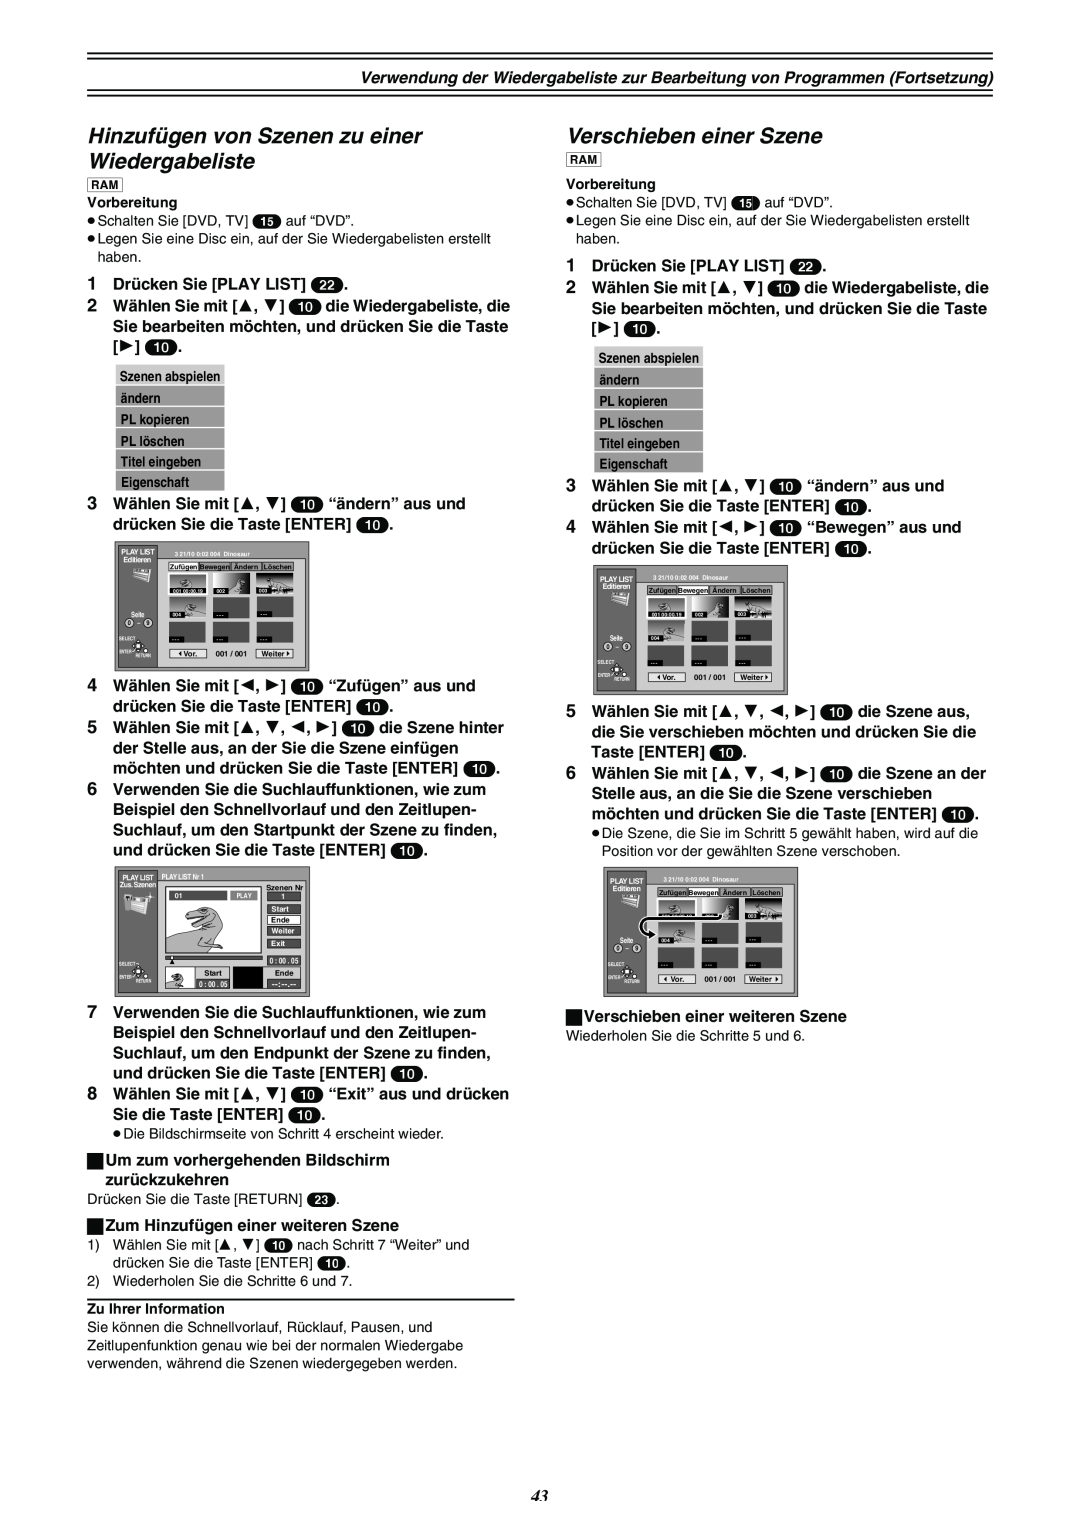 Panasonic DMR-E30 manual Hinzufügen von Szenen zu einer Wiedergabeliste, Verschieben einer Szene 